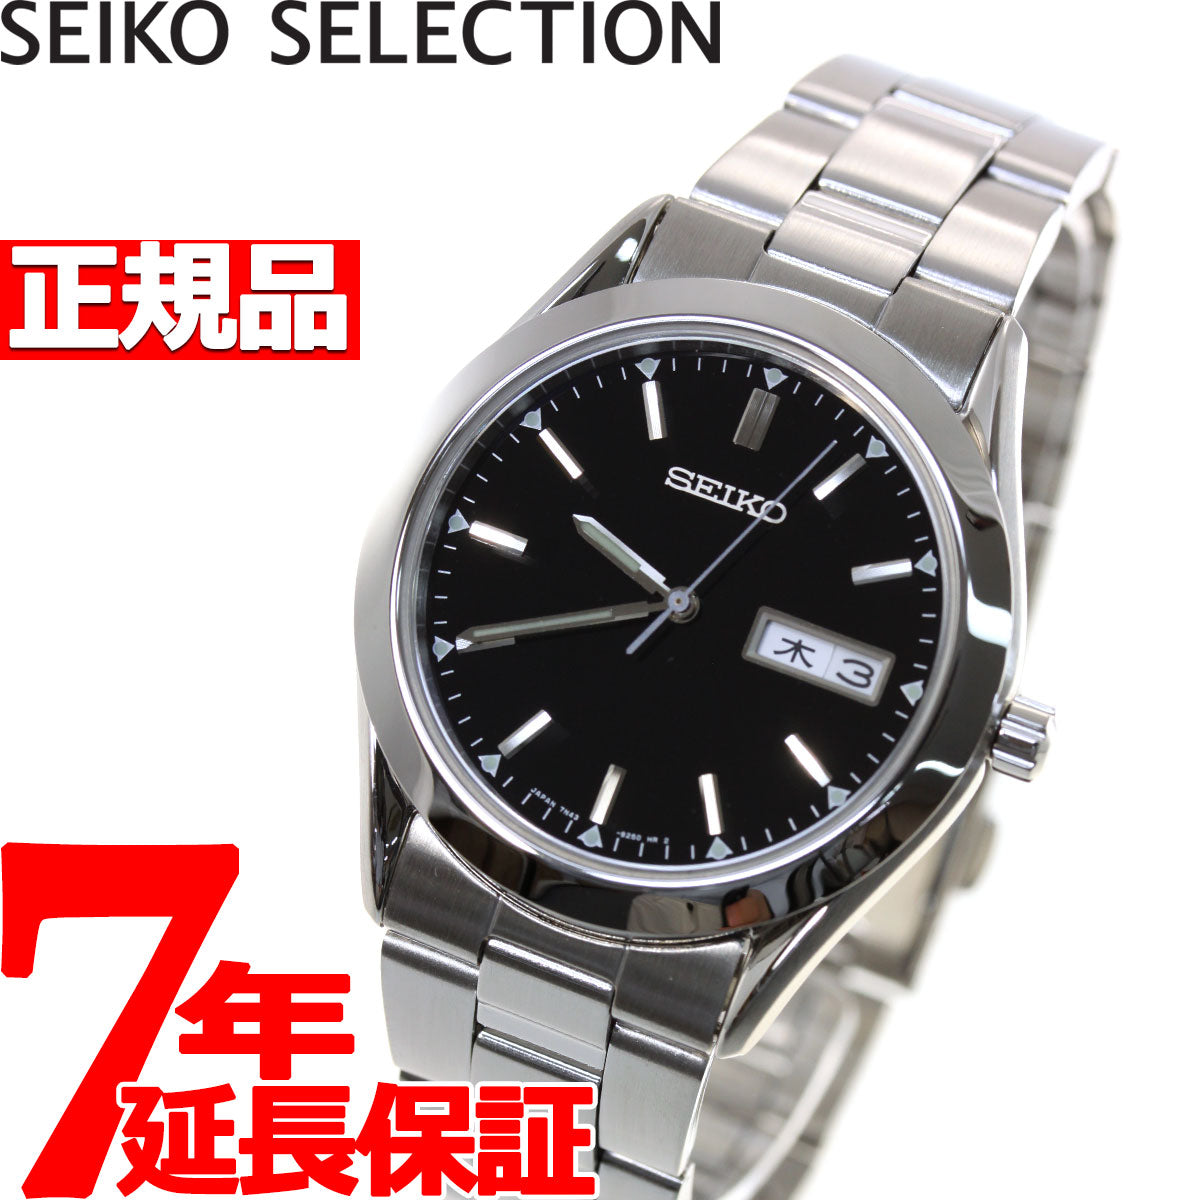 セイコー セレクション SEIKO SELECTION 腕時計 メンズ SCDC085 – neel